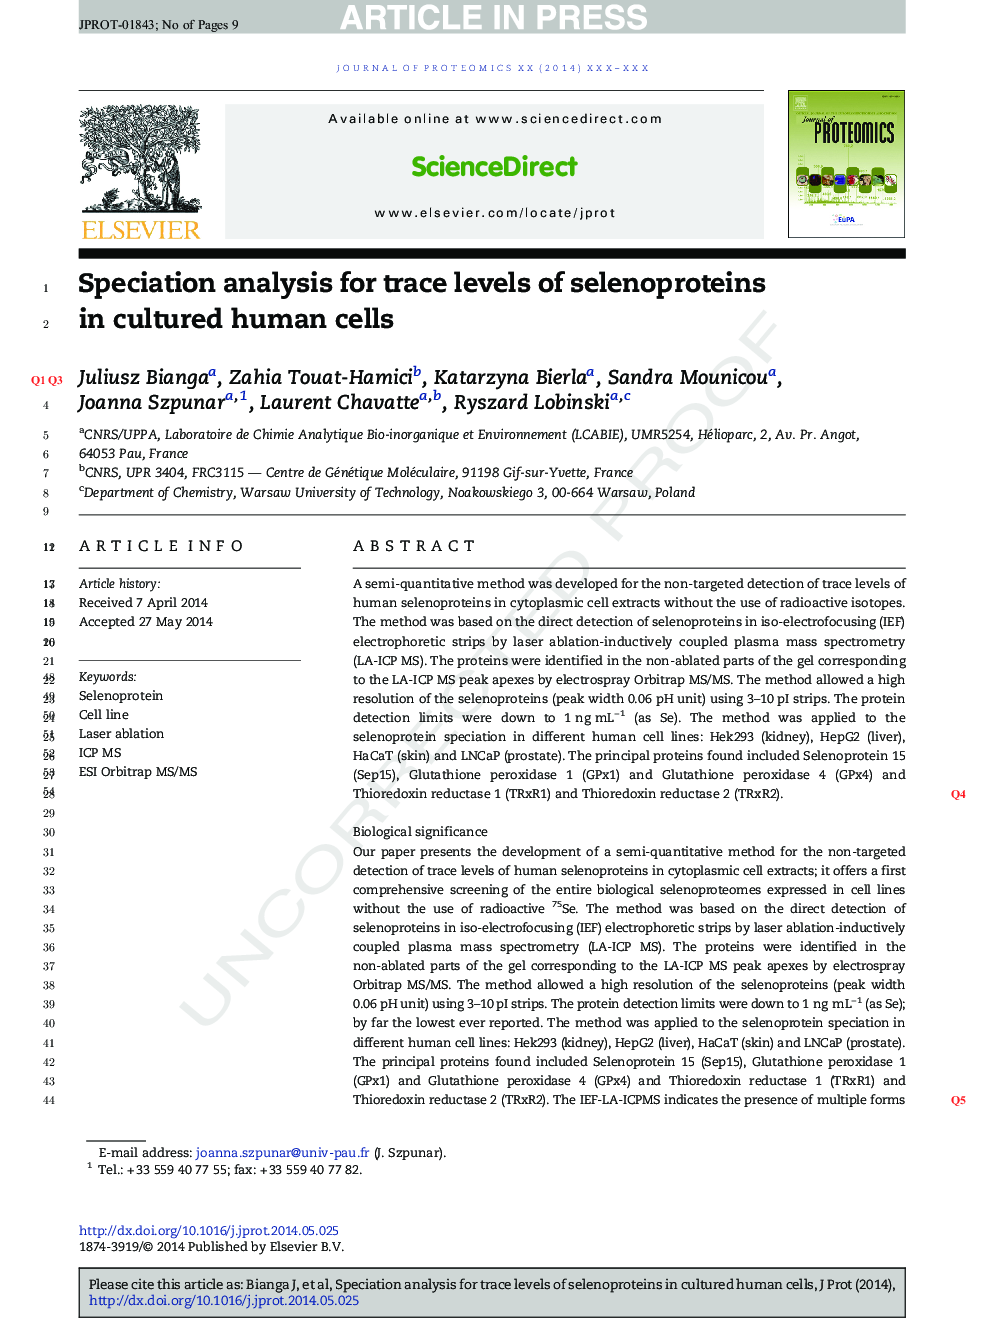 تجزیه و تحلیل ویژه برای سطوح ریز سلنوپروتئین ها در سلول های کشت شده انسان 